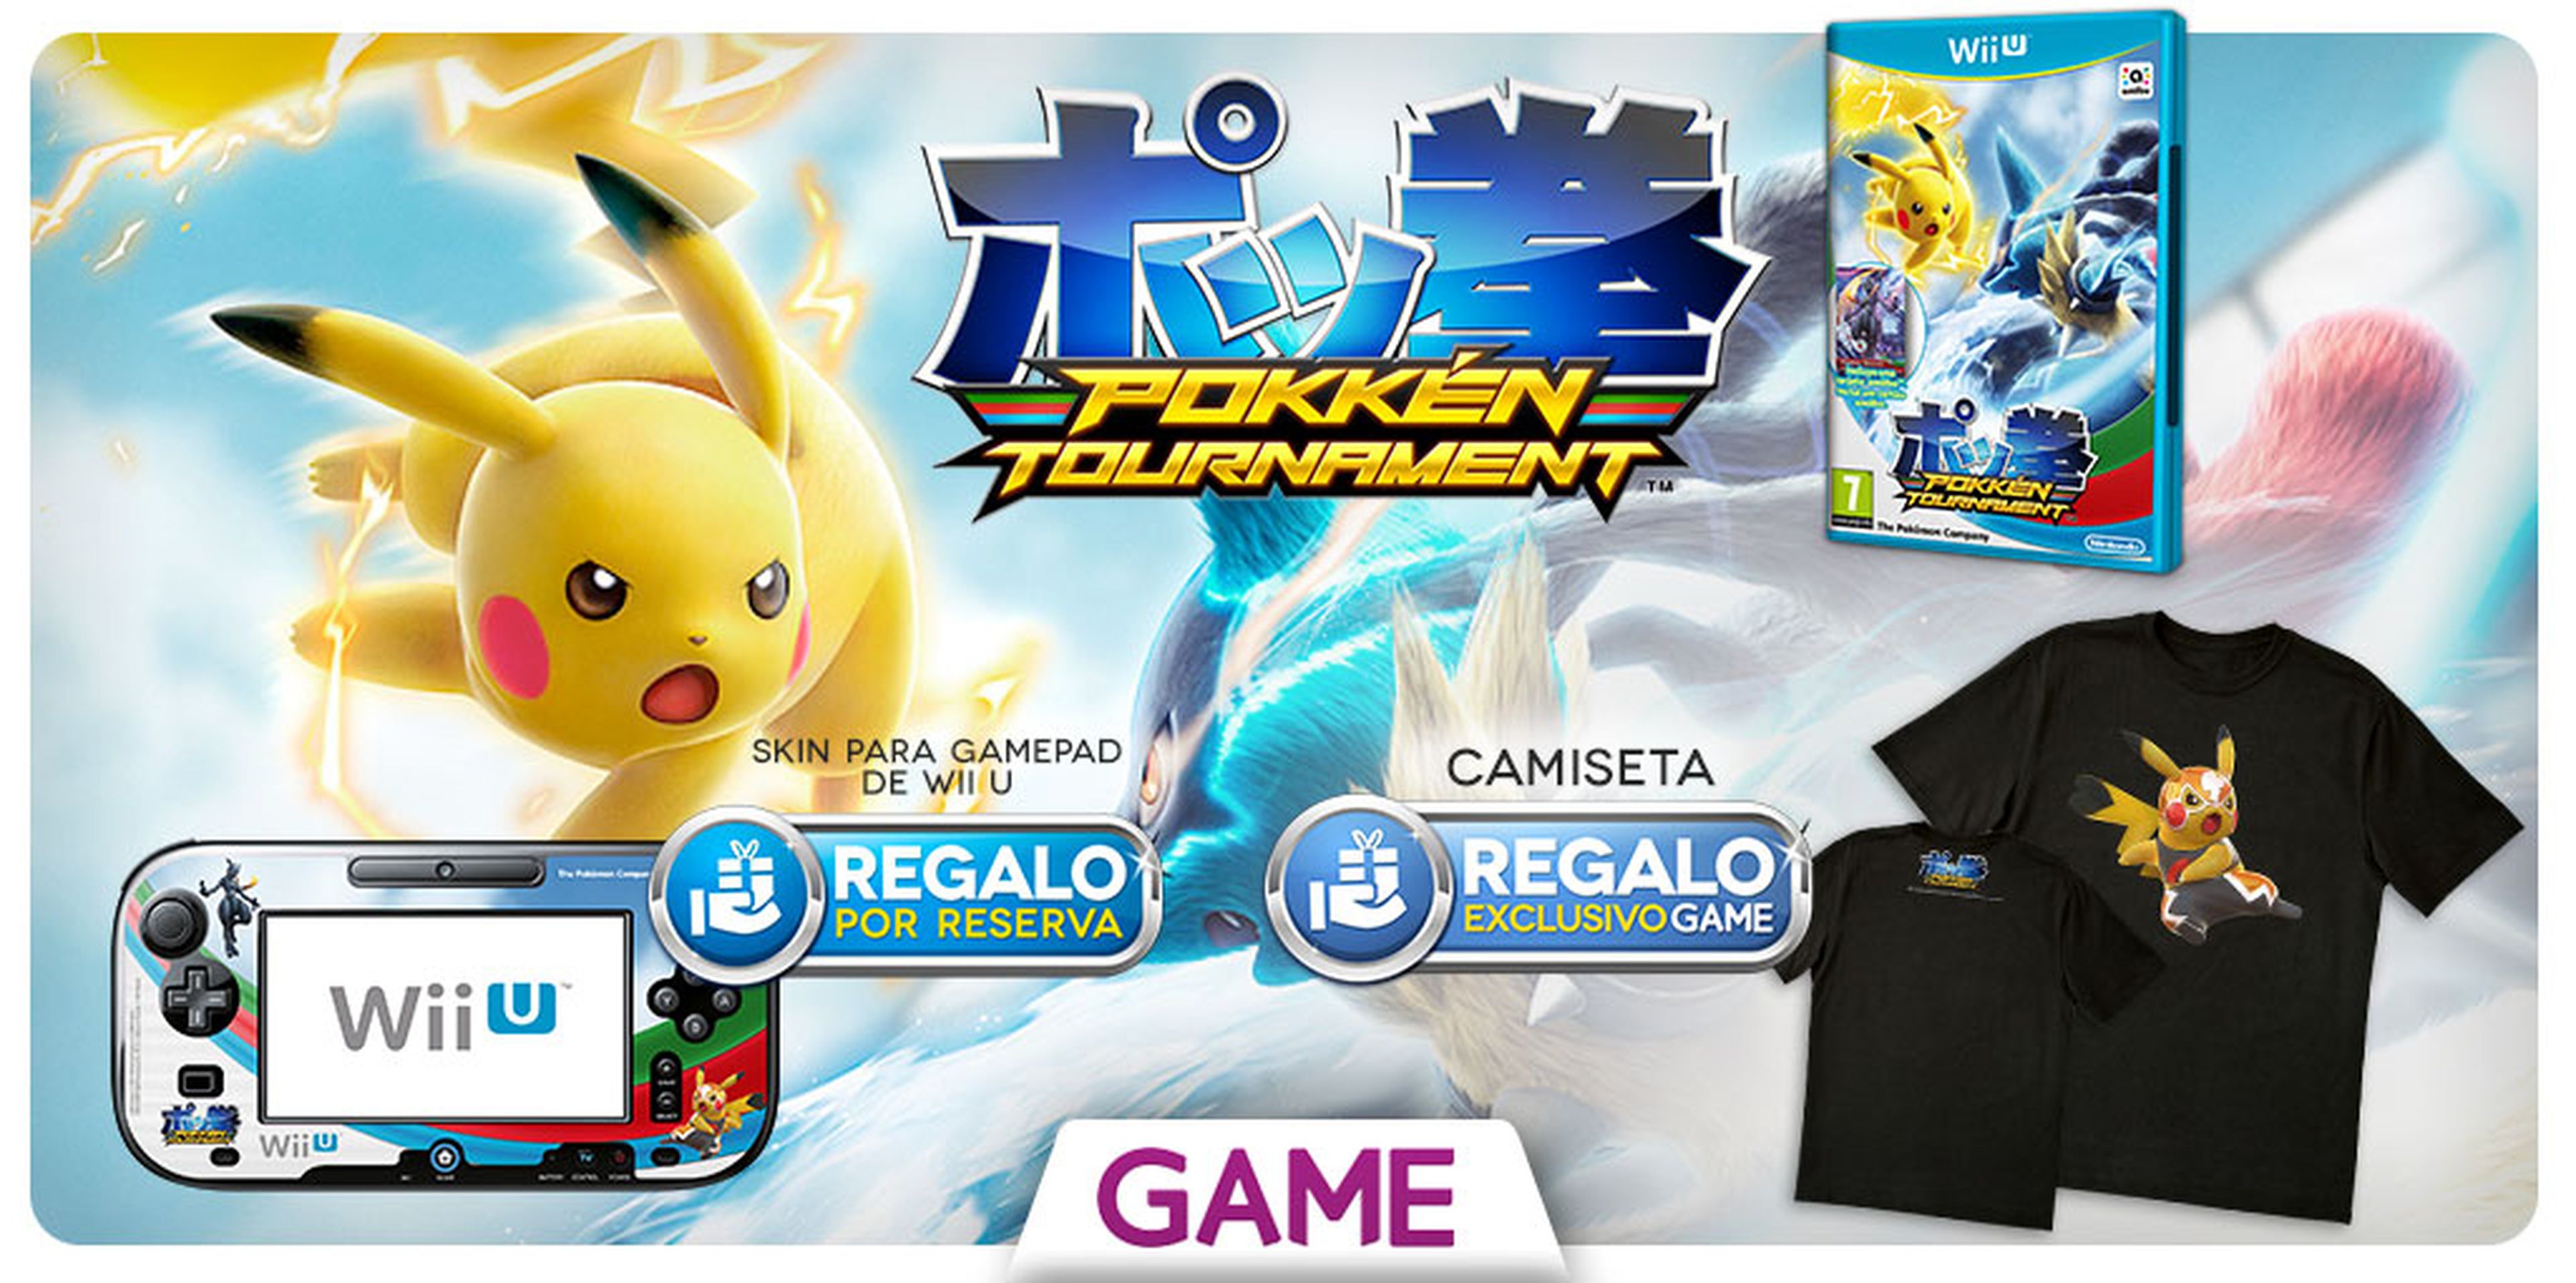 Pokkén Tournament para Wii U, con regalos por reserva en GAME